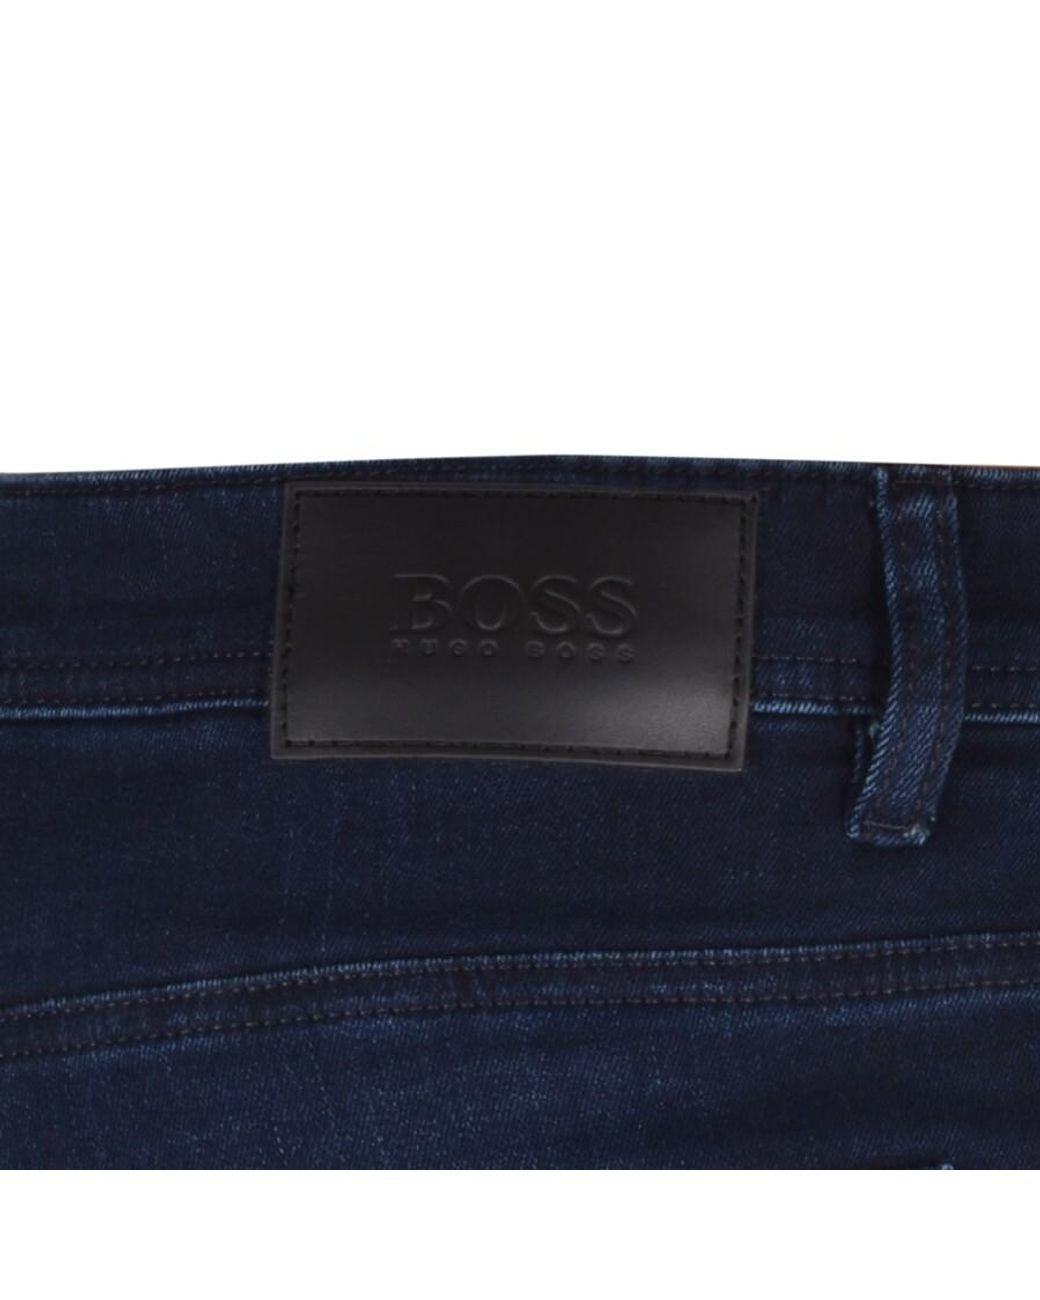 BOSS by HUGO BOSS Denim Boss Delaware Slim Fit Jeans in Navy (Blue) for Men  - Lyst